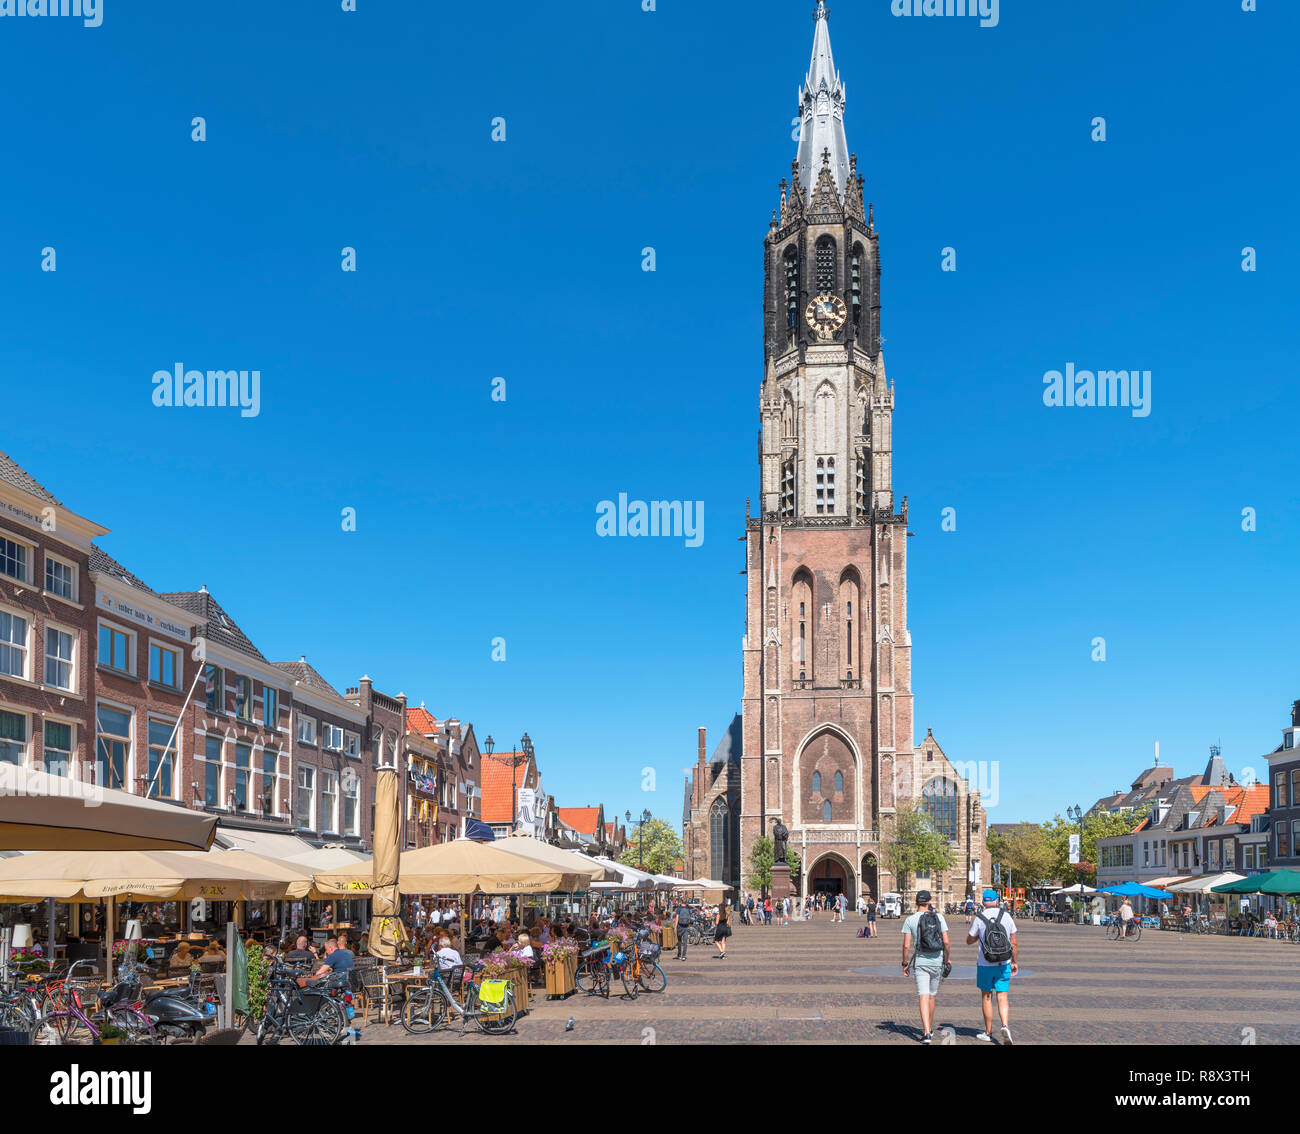 Historique La 15e siècle Nieuwe Kerk (nouvelle église) dans le Markt (place du marché), Delft, Zuid-Holland (Hollande méridionale), Pays-Bas Banque D'Images